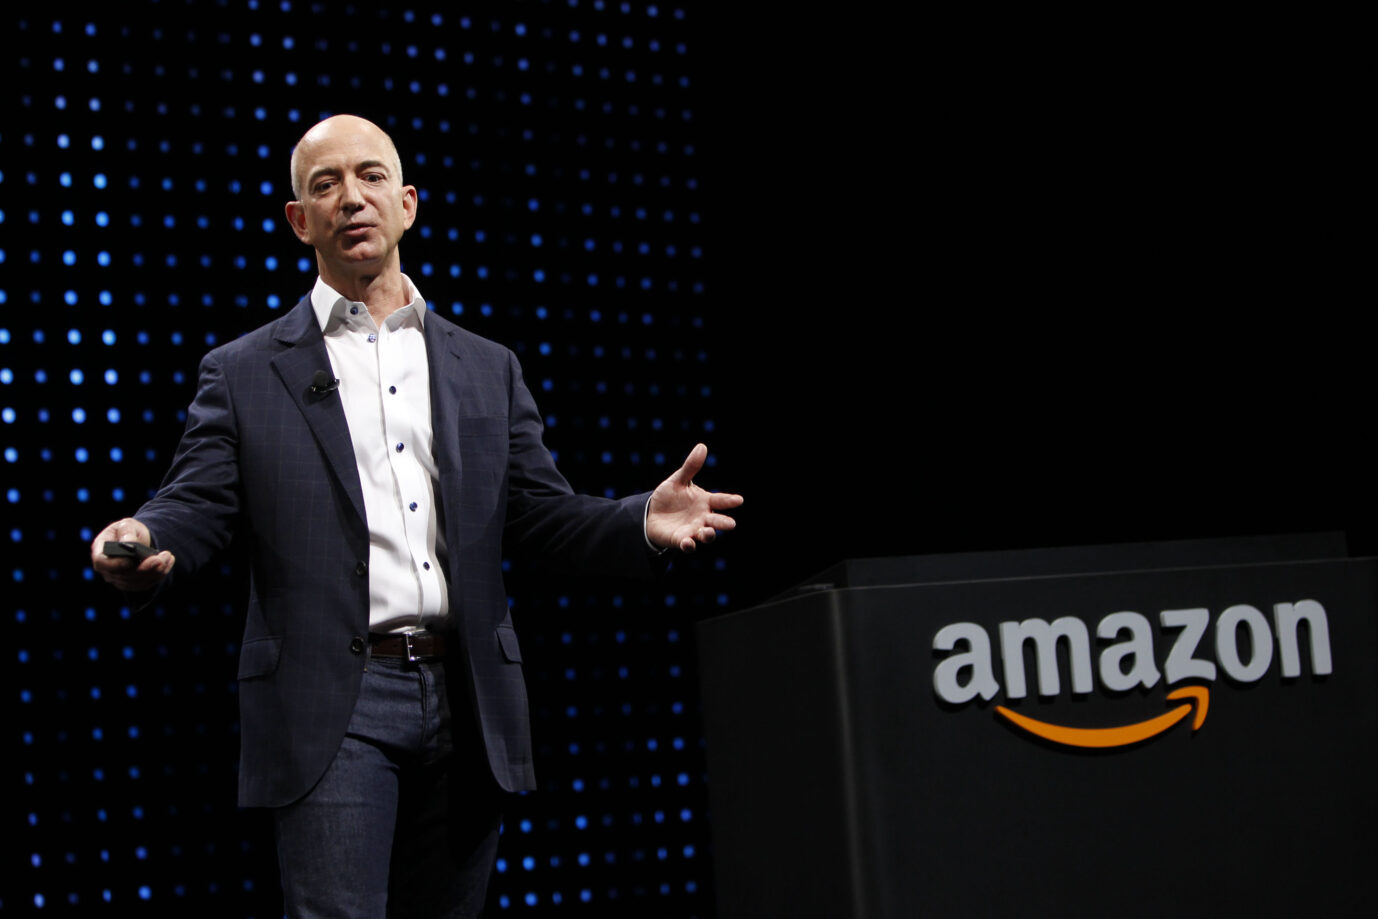 Auf dem Bild befindet sich Jeff Bezos, Gründer von Amazon. Er gewann neulich eine Klage gegen den sogenannten Digital Services Act.